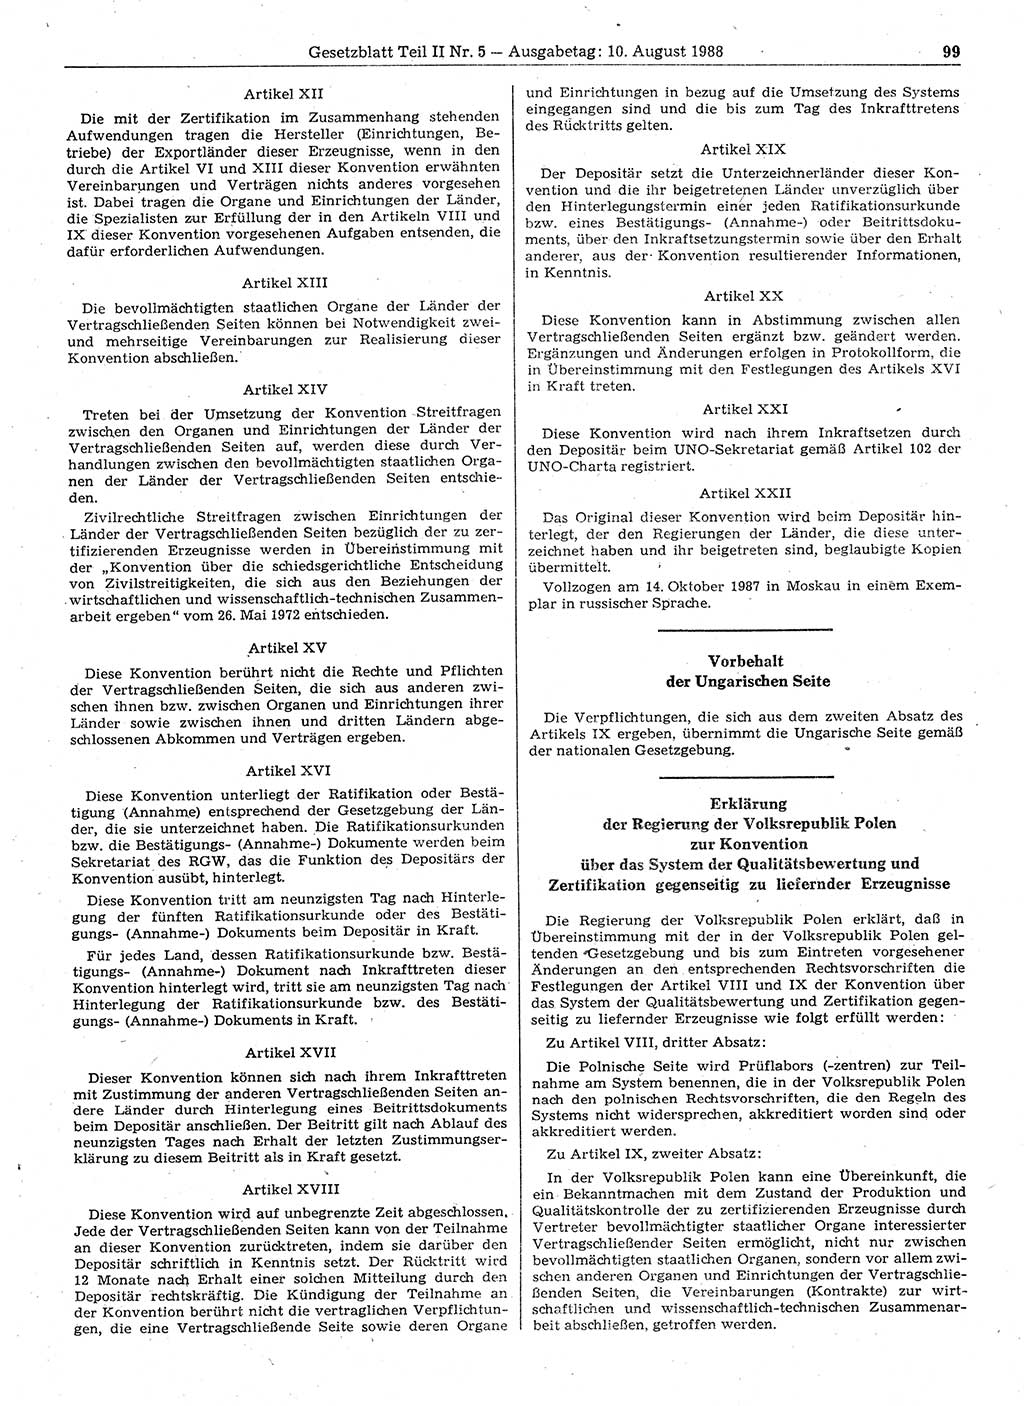 Gesetzblatt (GBl.) der Deutschen Demokratischen Republik (DDR) Teil ⅠⅠ 1988, Seite 99 (GBl. DDR ⅠⅠ 1988, S. 99)